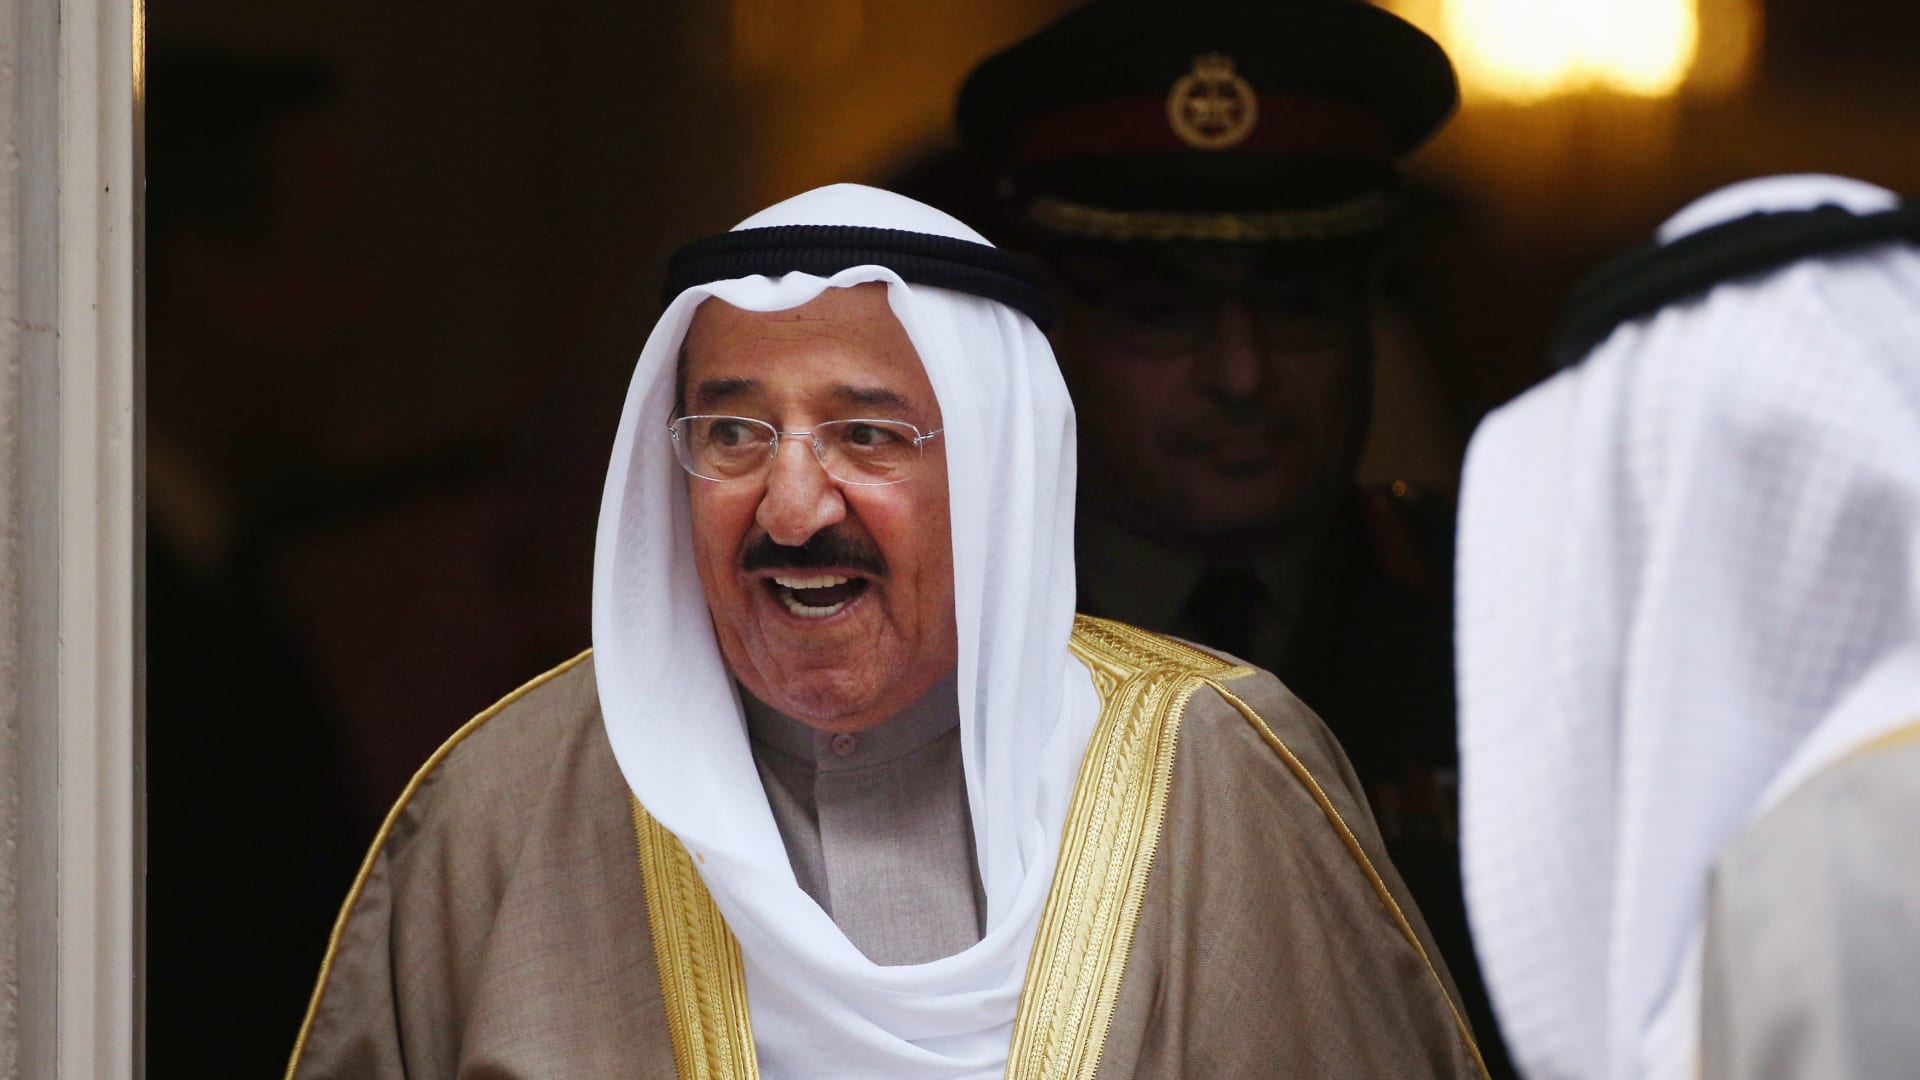 بينهم الملك عبدالعزيز آل سعود.. هؤلاء القادة حصلوا على وسام الاستحقاق الأمريكي الممنوح لأمير الكويت